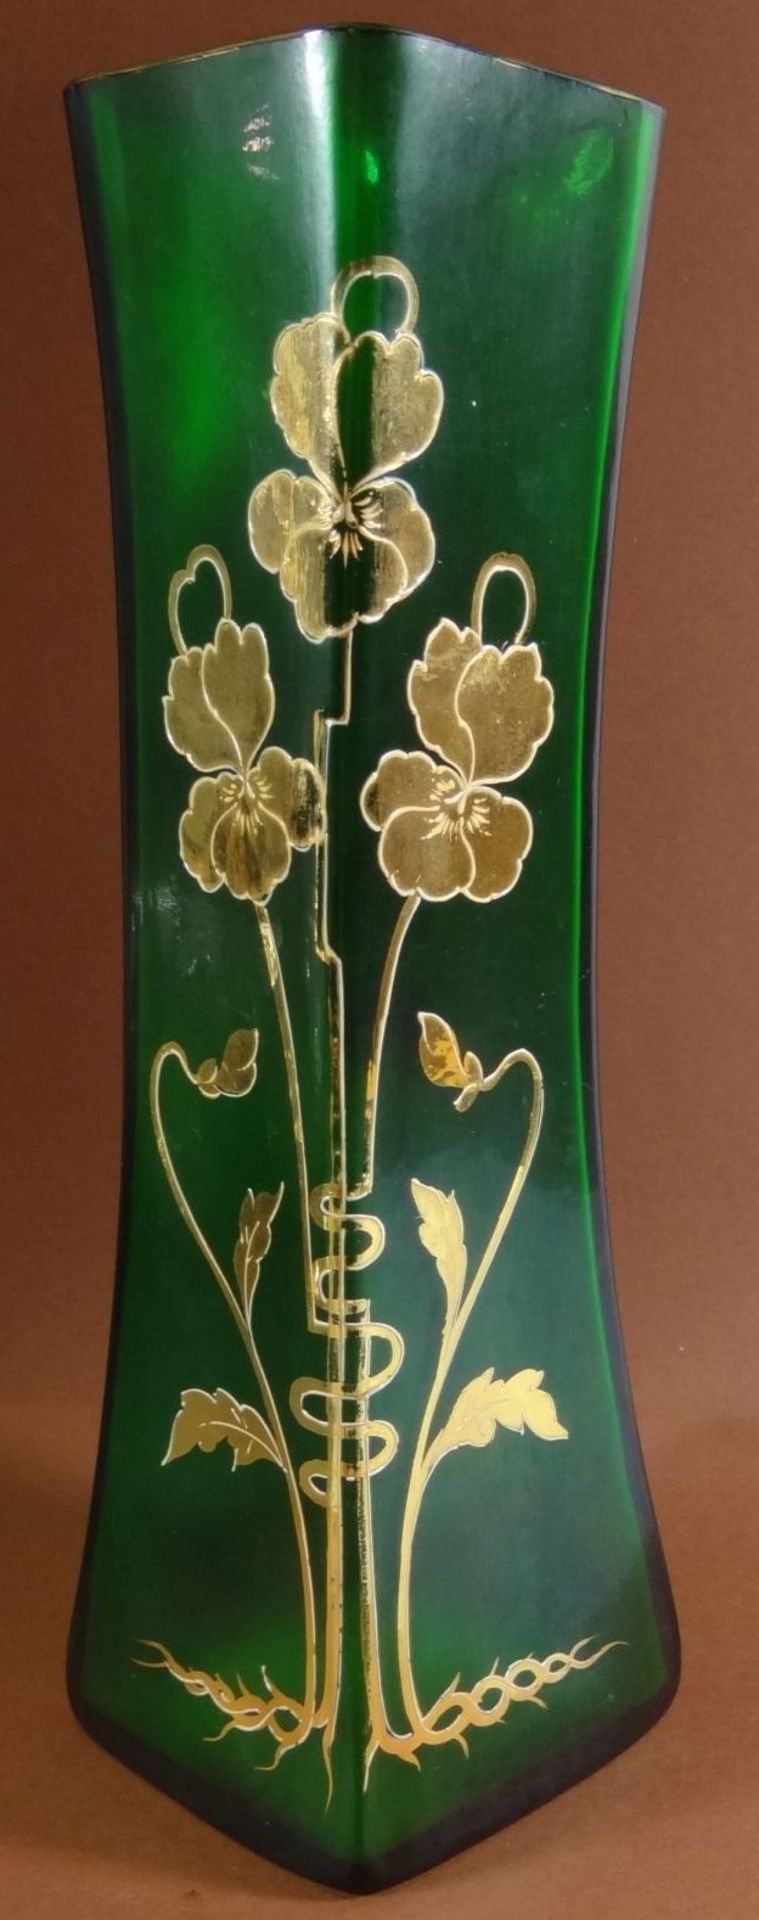 Jugendstil-Vase mit Goldblumen, grün, H-24 c